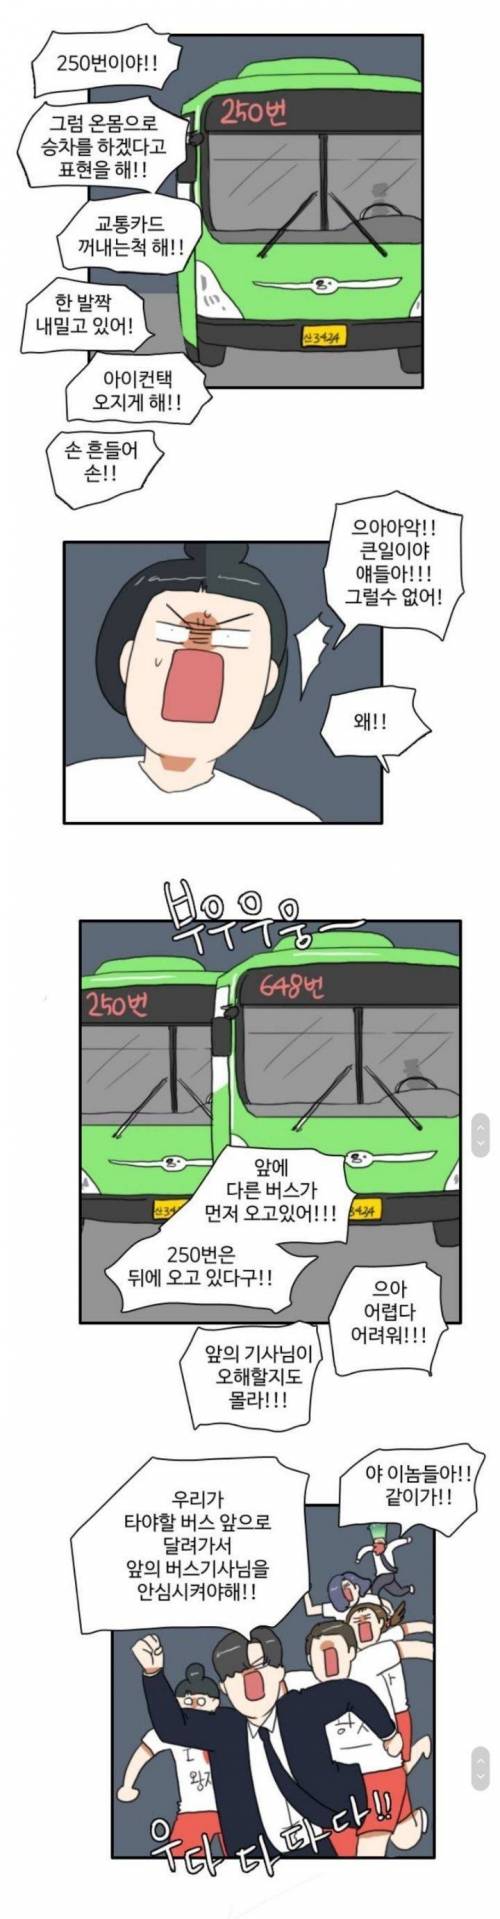 [스압] 한국사람들 버스 탈 때 국룰.jpg